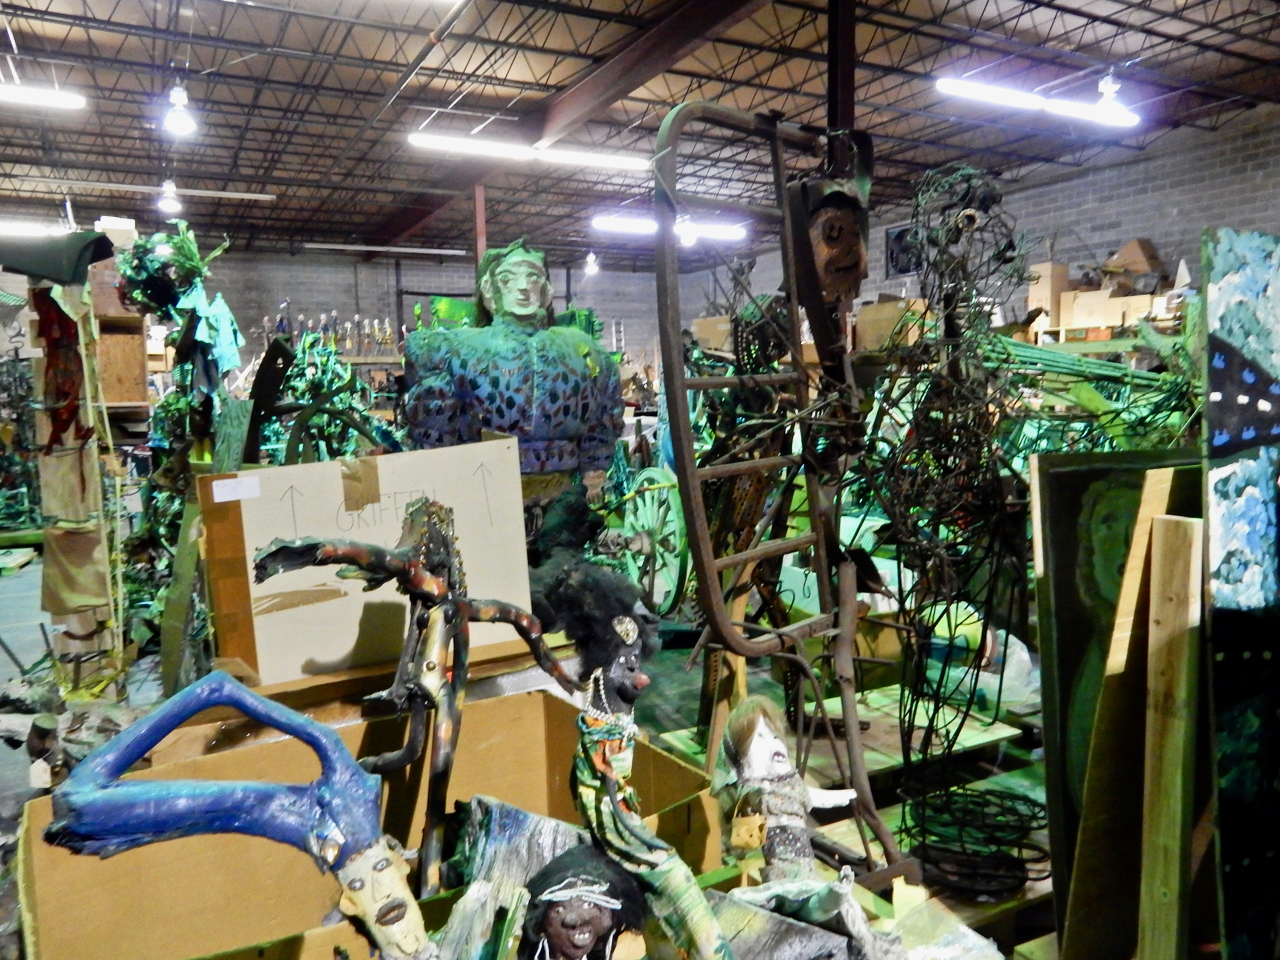 An art profusion at the Souls Grown Deep warehouse in Atlanta